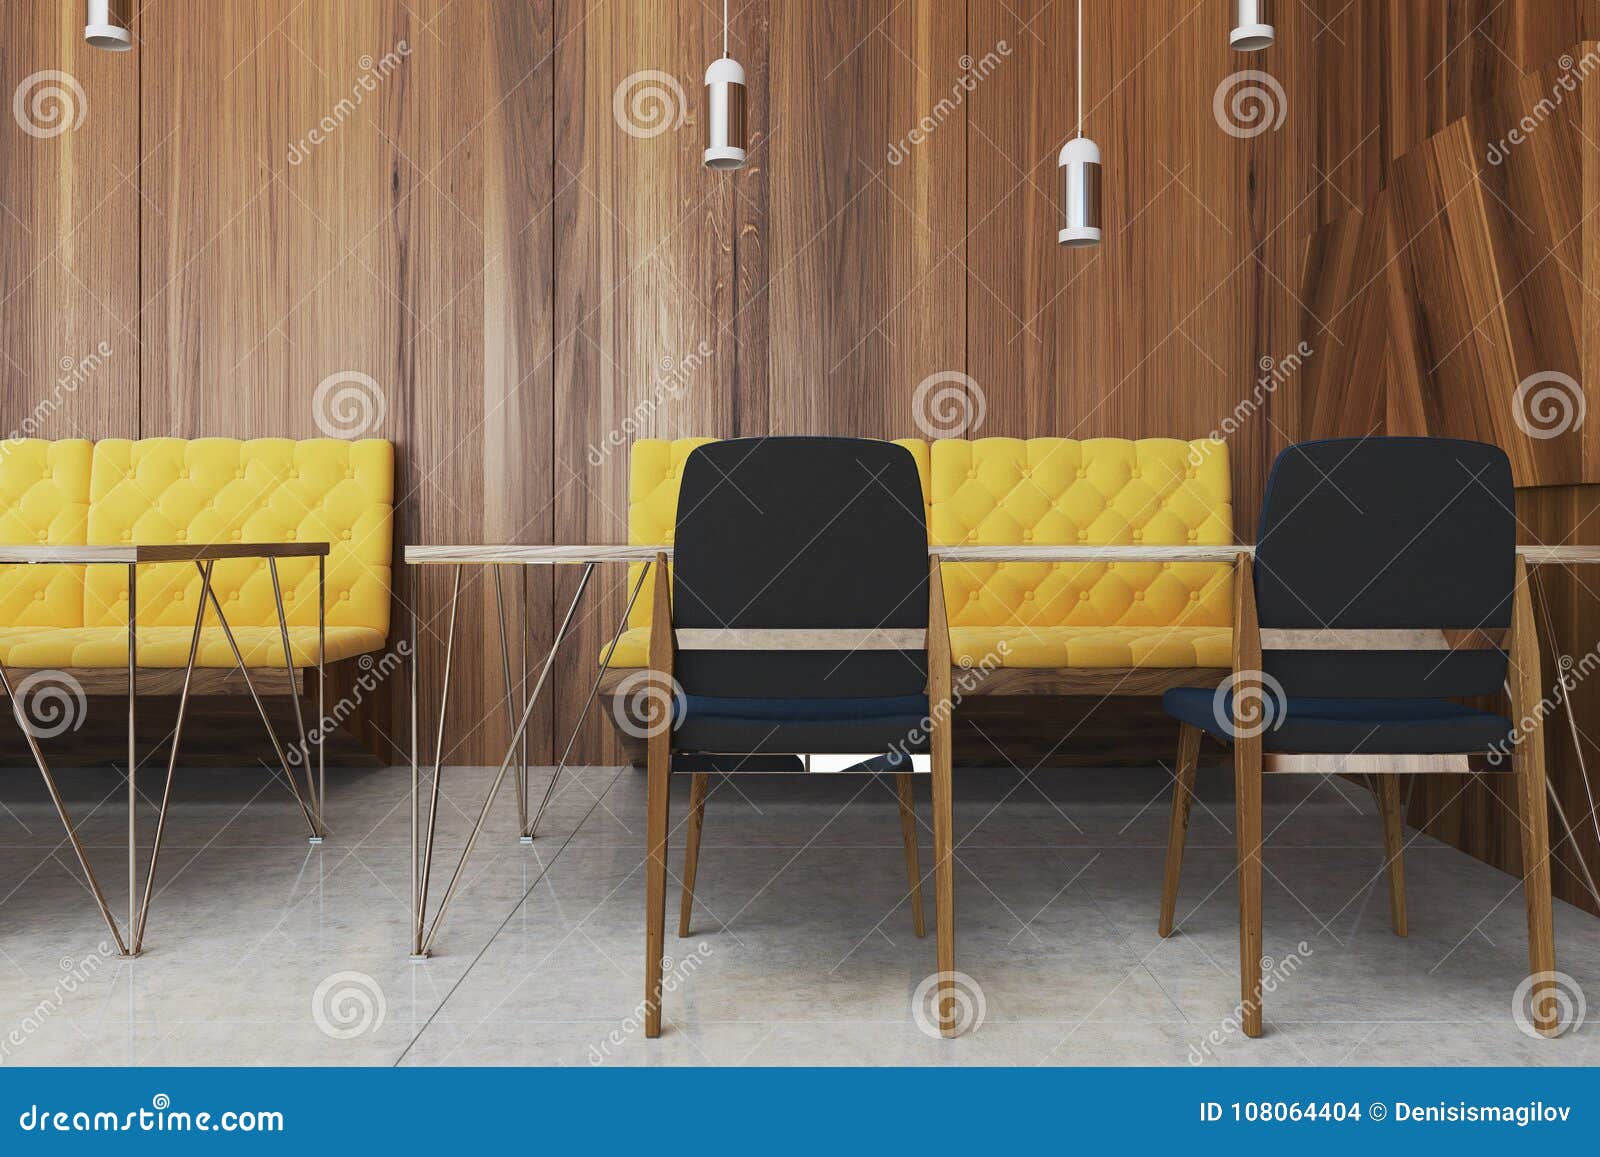 10x por favor sentado aquí-Sala De Espera Oficina Escuela Silla Pegatina 15CM 